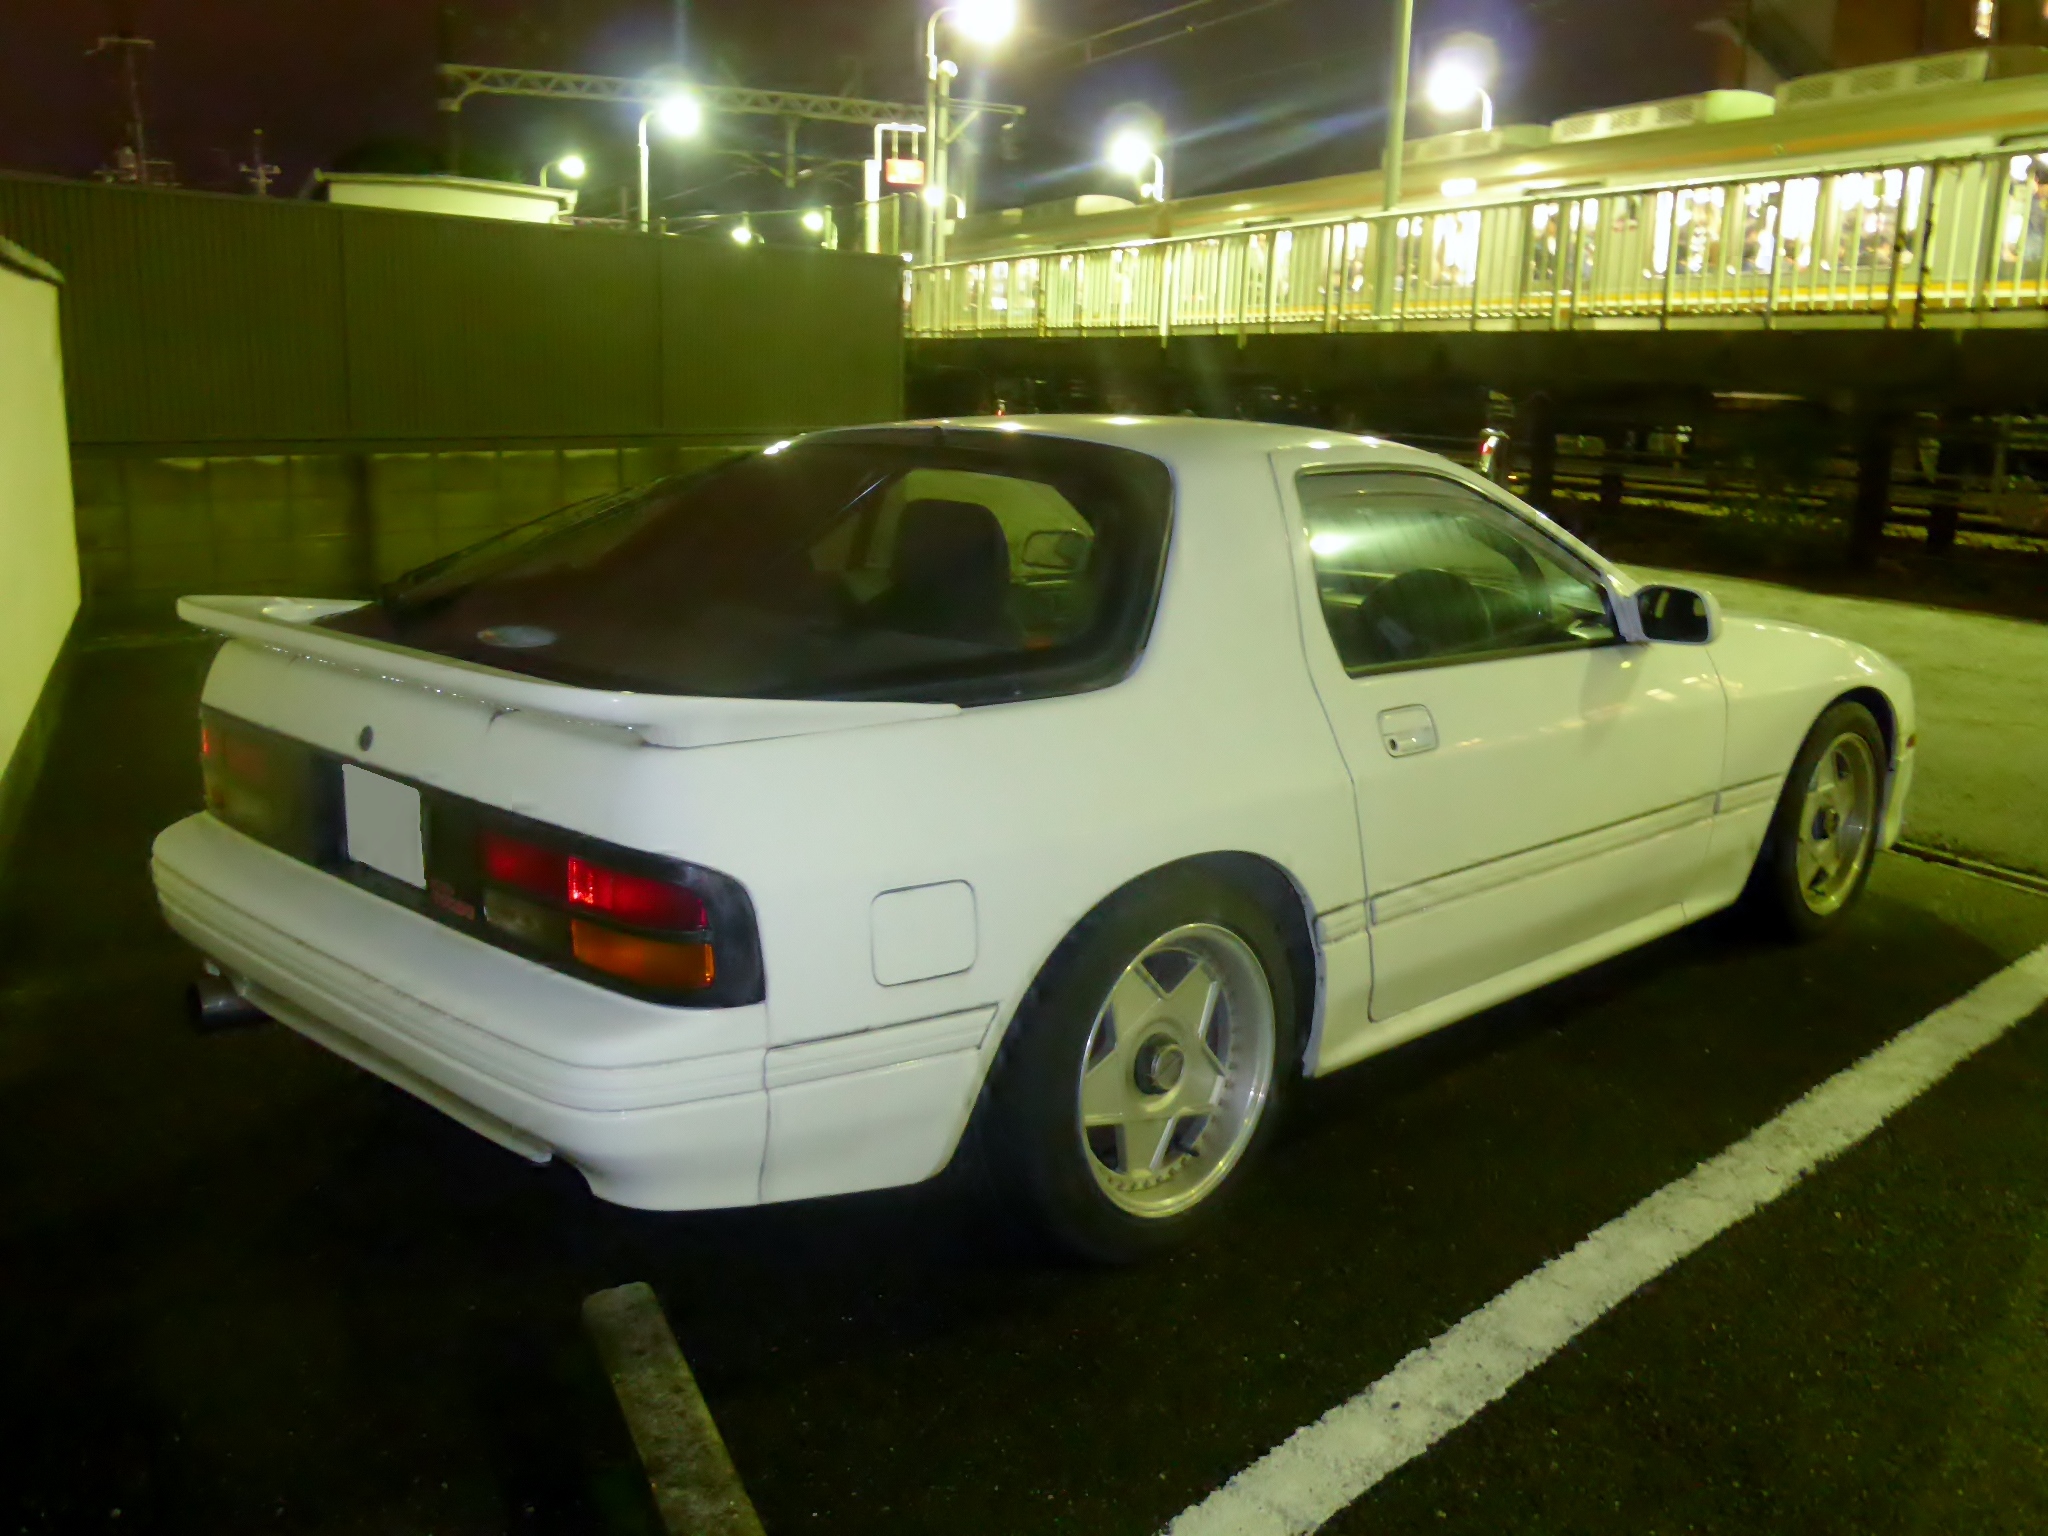 Mazda_RX-7_(FC3S)_at_night_rear